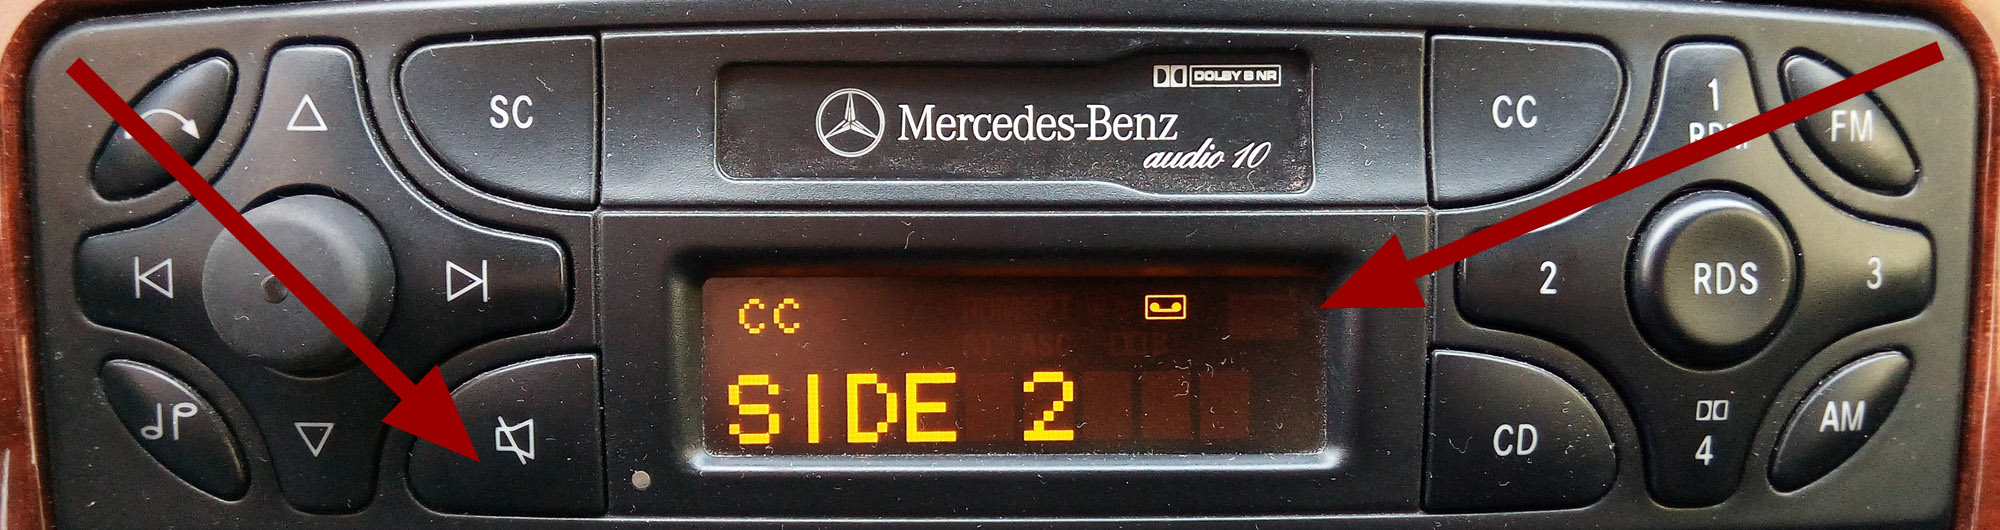 Verkehrsfunk beim Autoradio Mercedes-Benz AUDIO 10 und AUDIO 10 CD einschalten